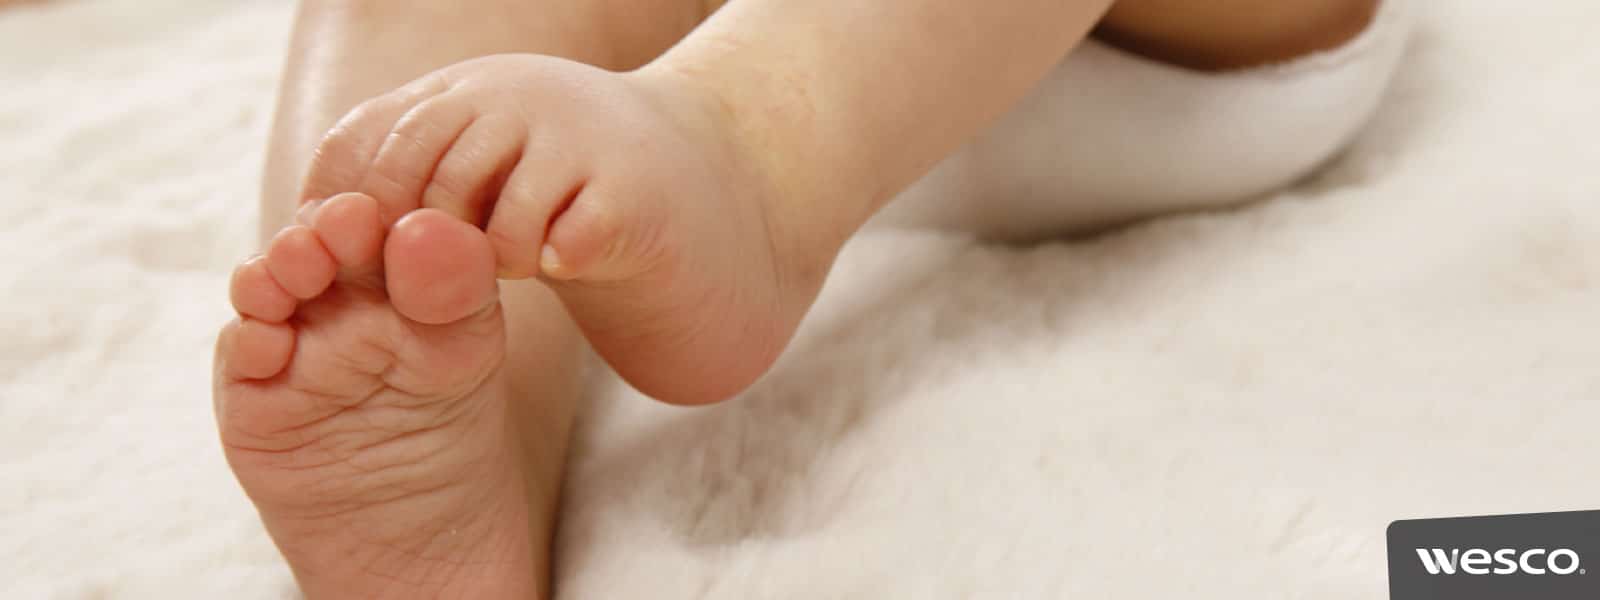 Comment habiller bébé à la naissance : les 6 indispensables !